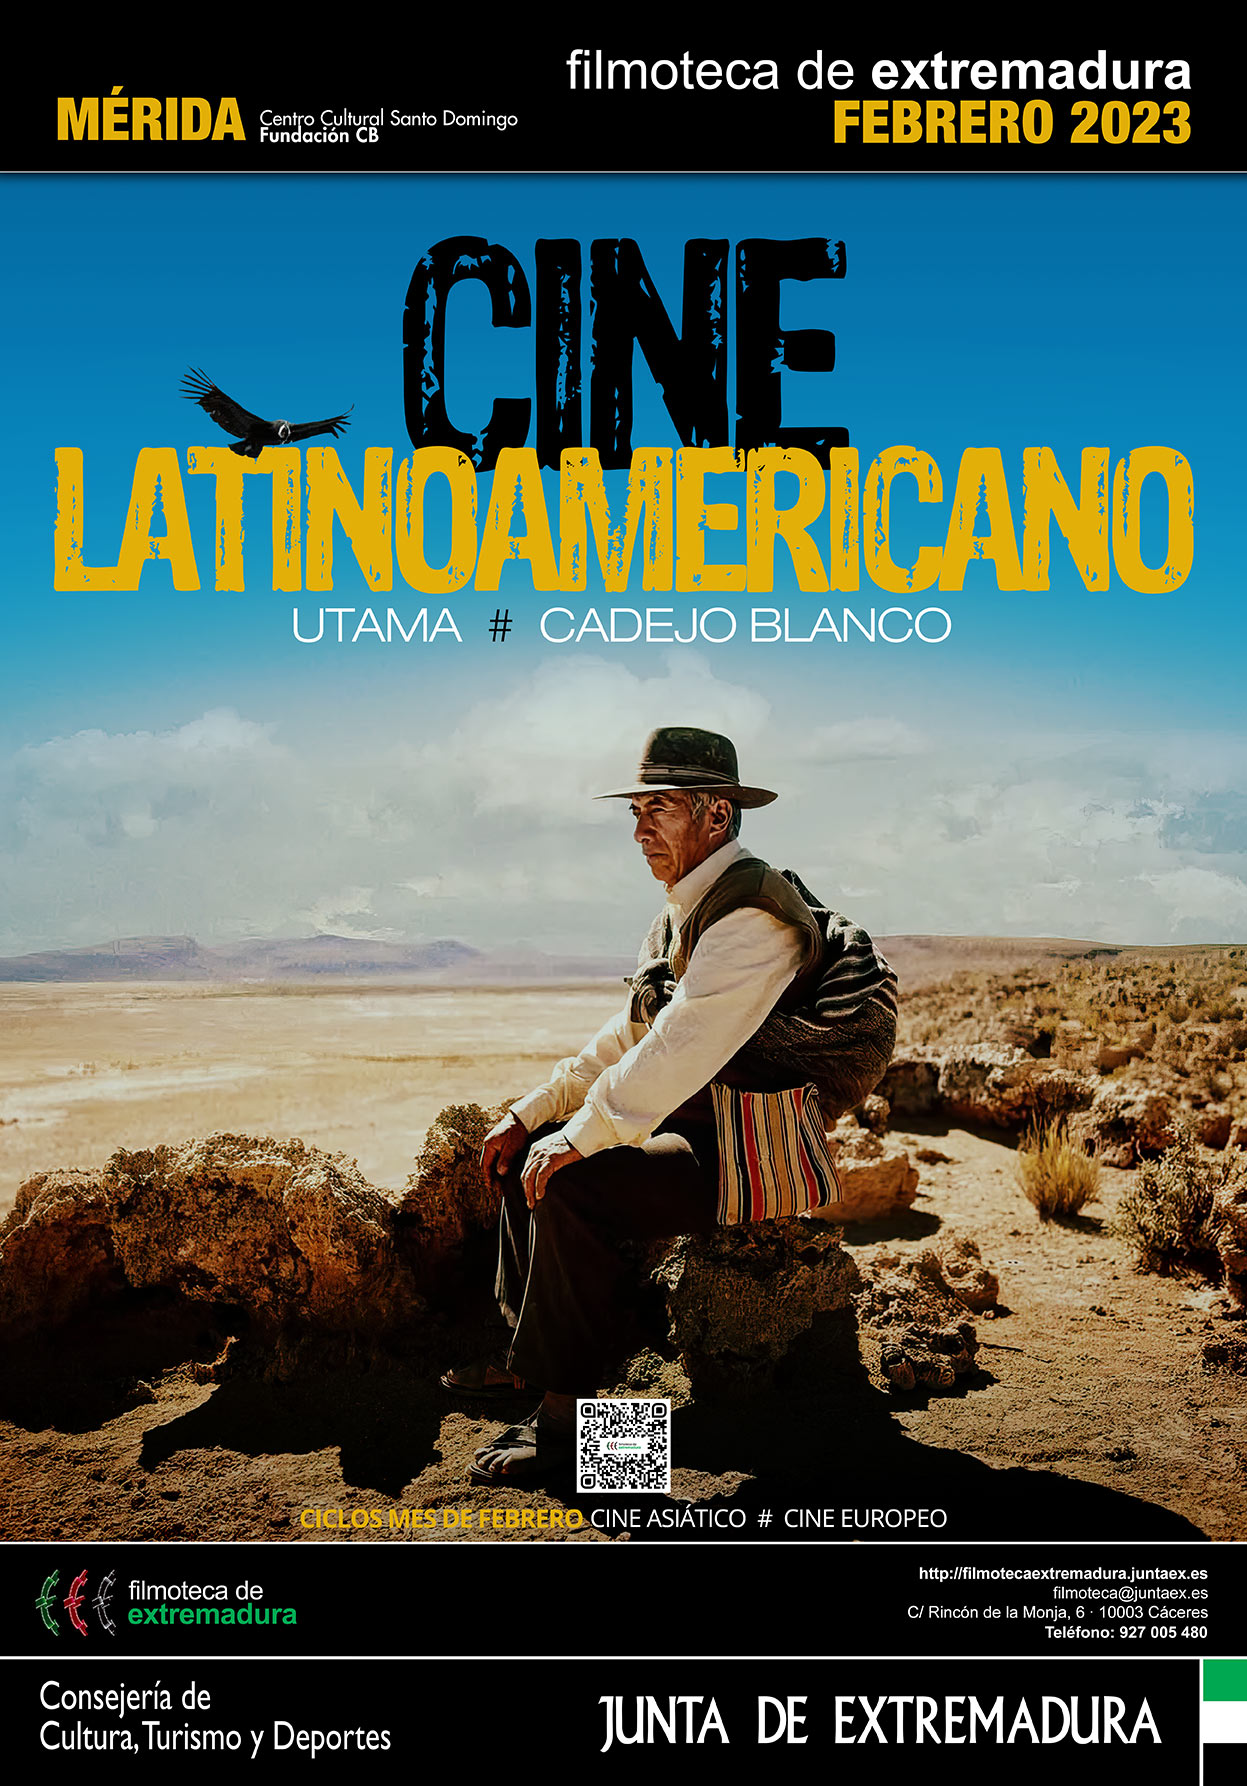 Foto del cartel de la programación de la Filmoteca